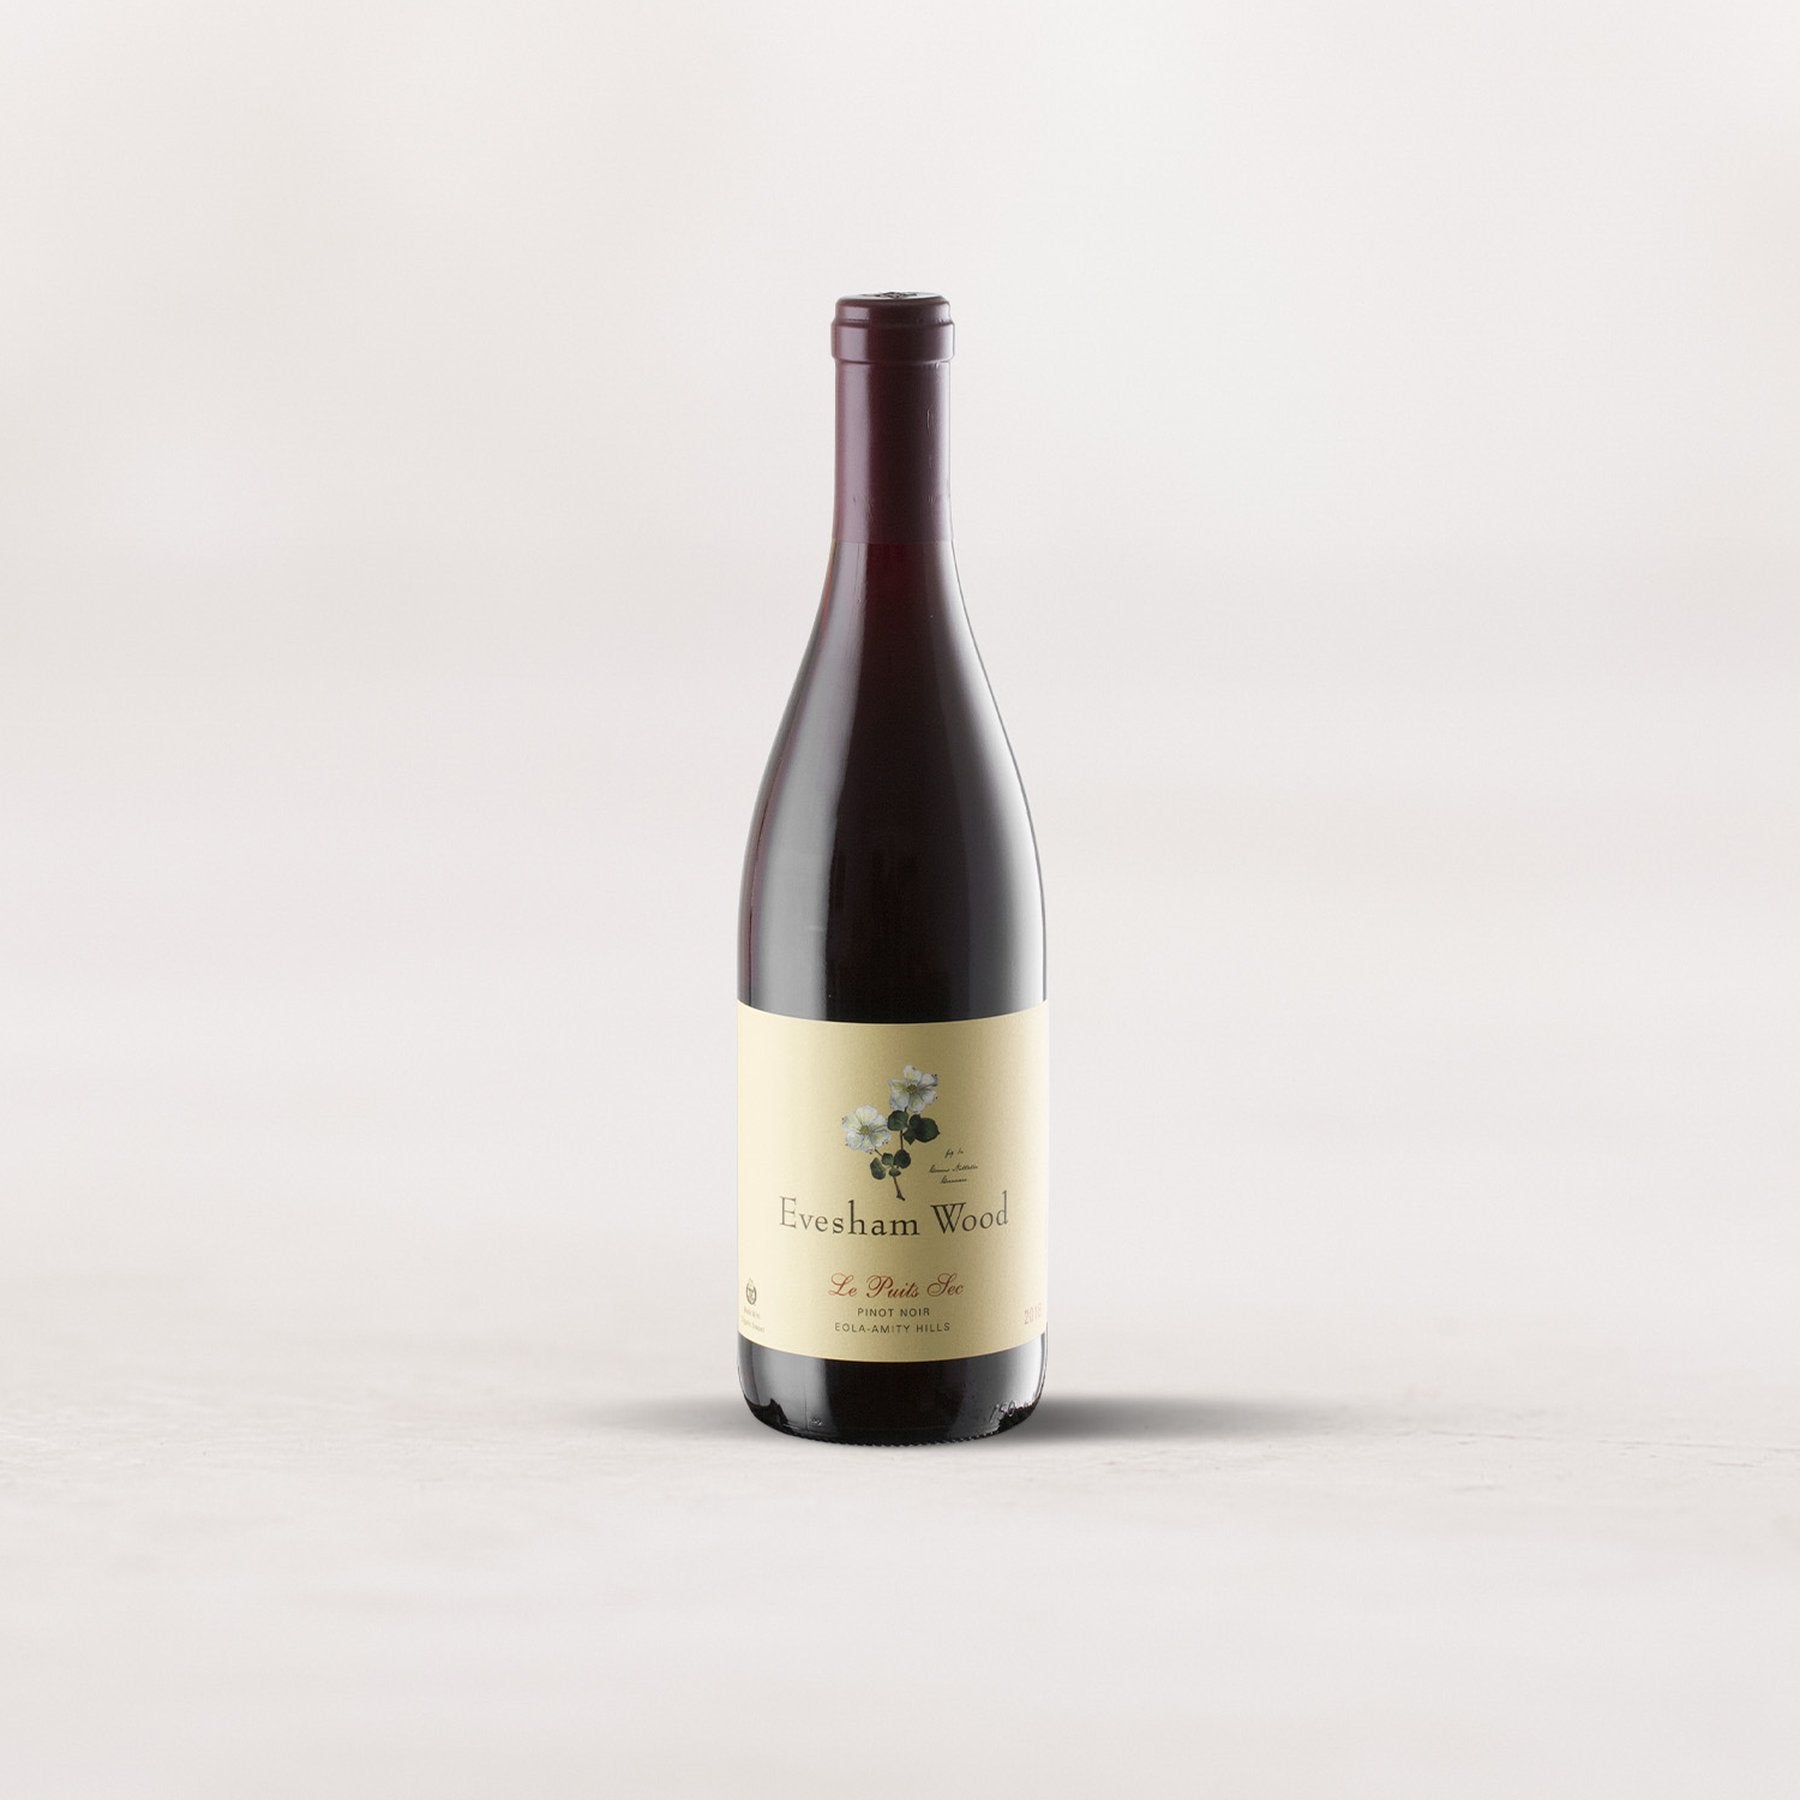 Evesham Wood, “Le Puits Sec” Pinot Noir